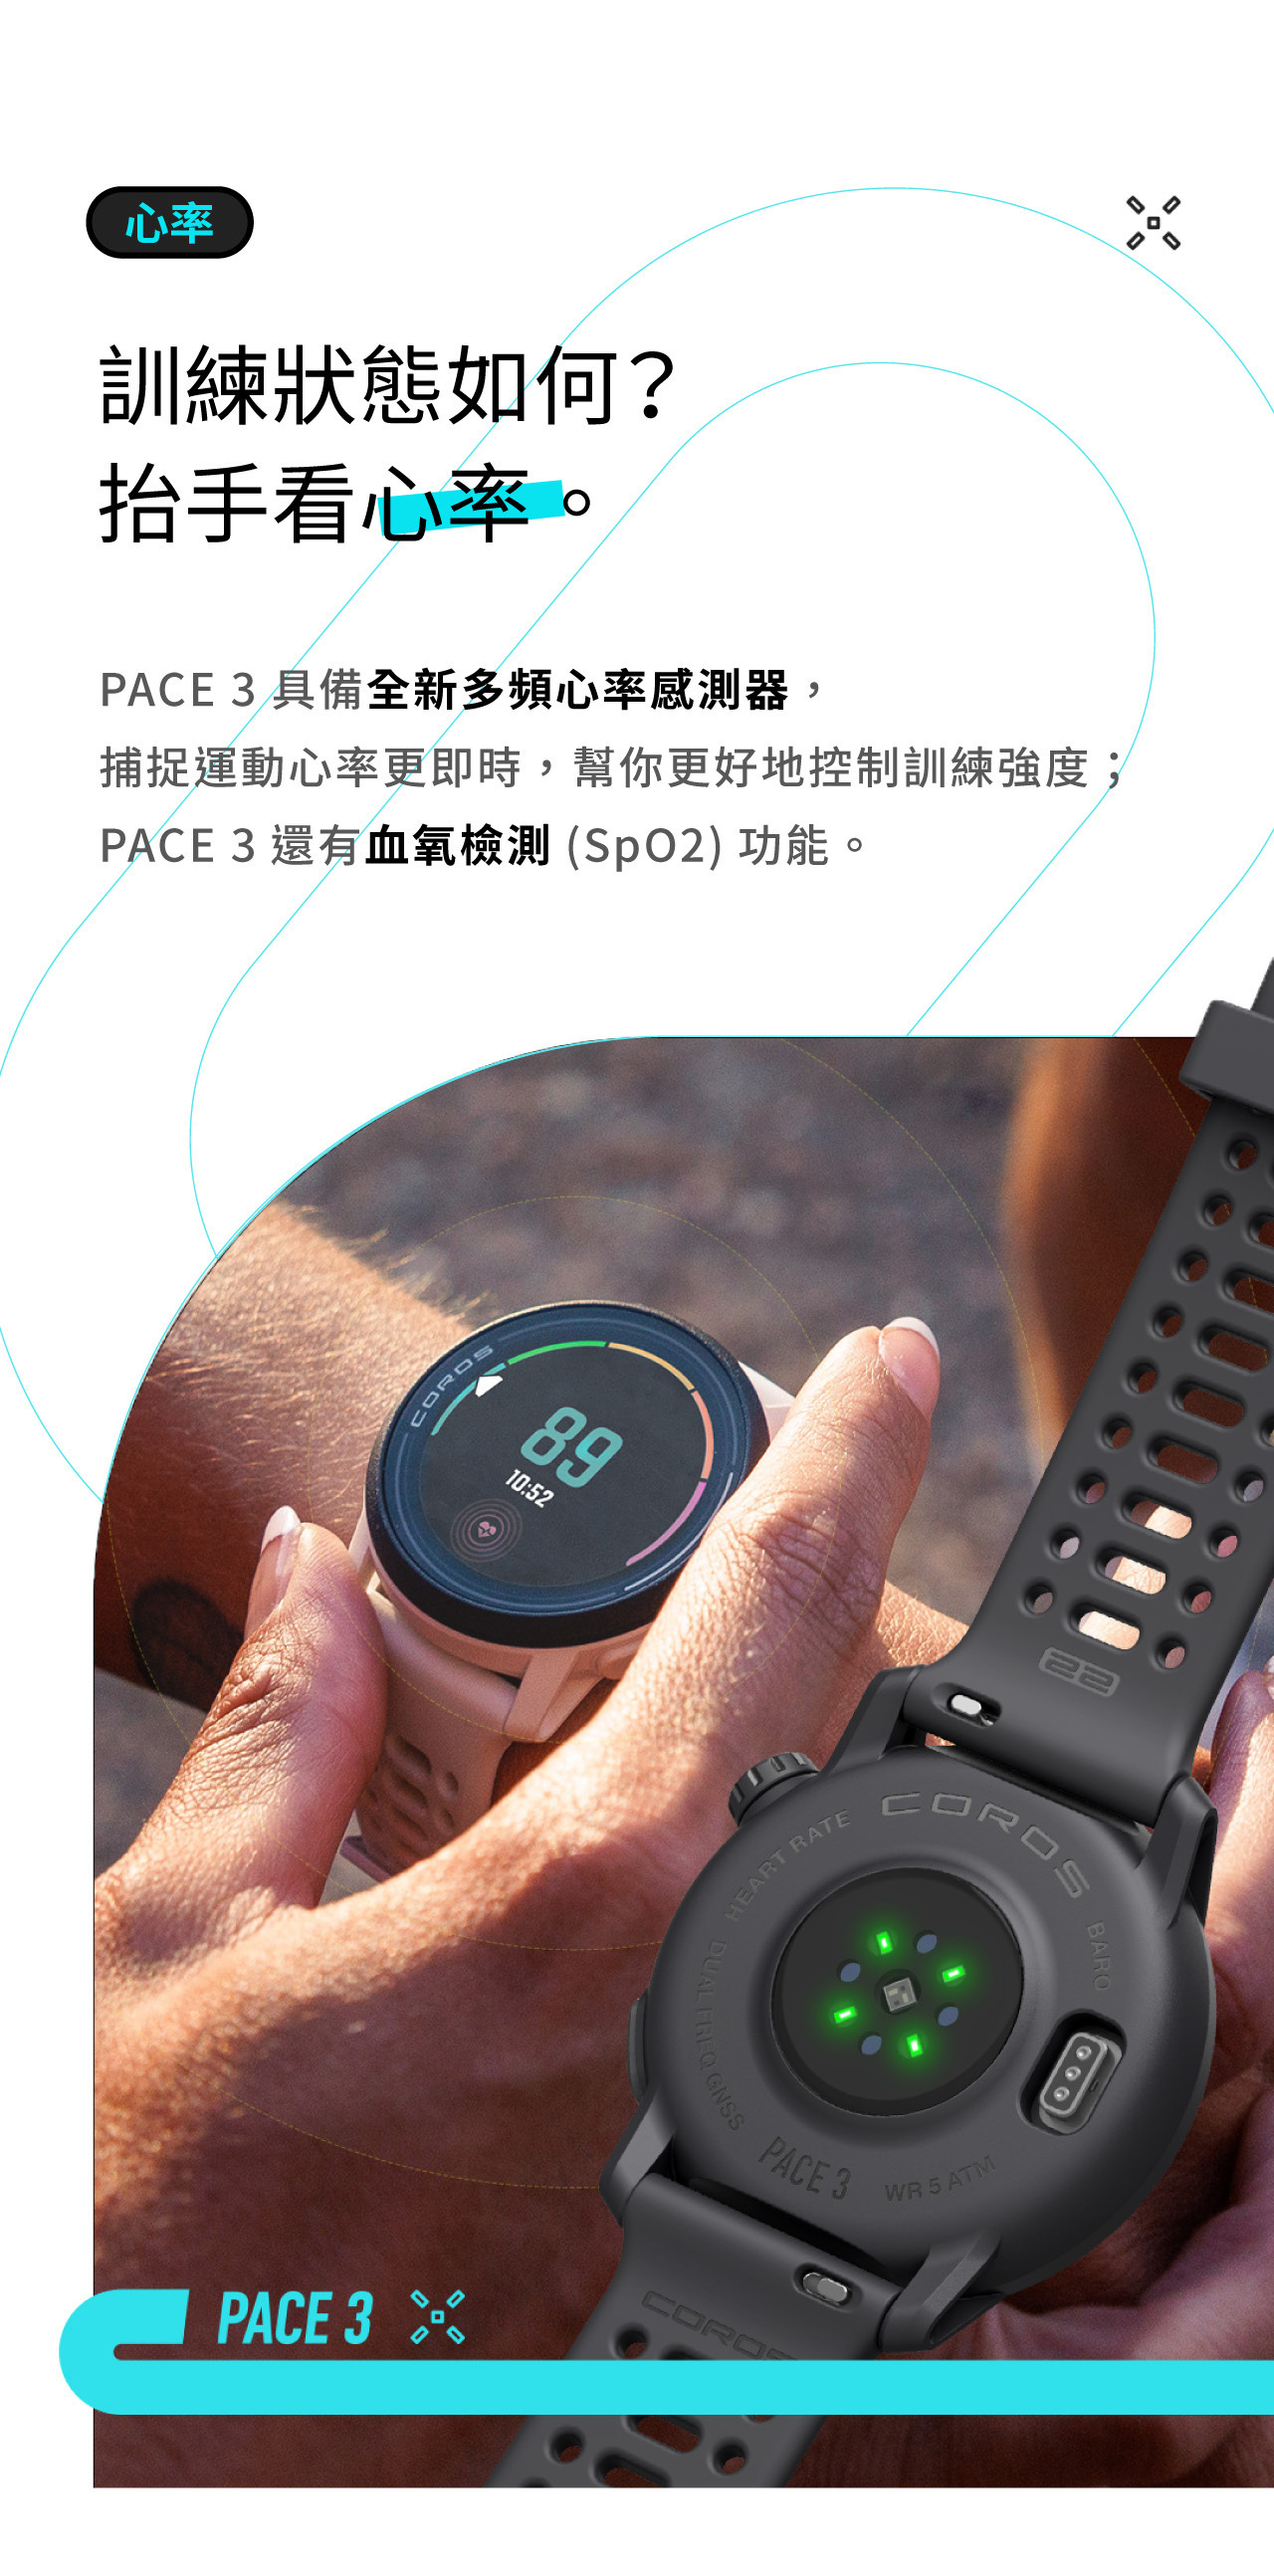 訓練狀態如何？ 抬手看心率。PACE 3 具備全新多頻心率感測器， 捕捉運動心率更即時，幫你更好地控制訓練強度； PACE 3還有血氧檢測(SpO2)功能。